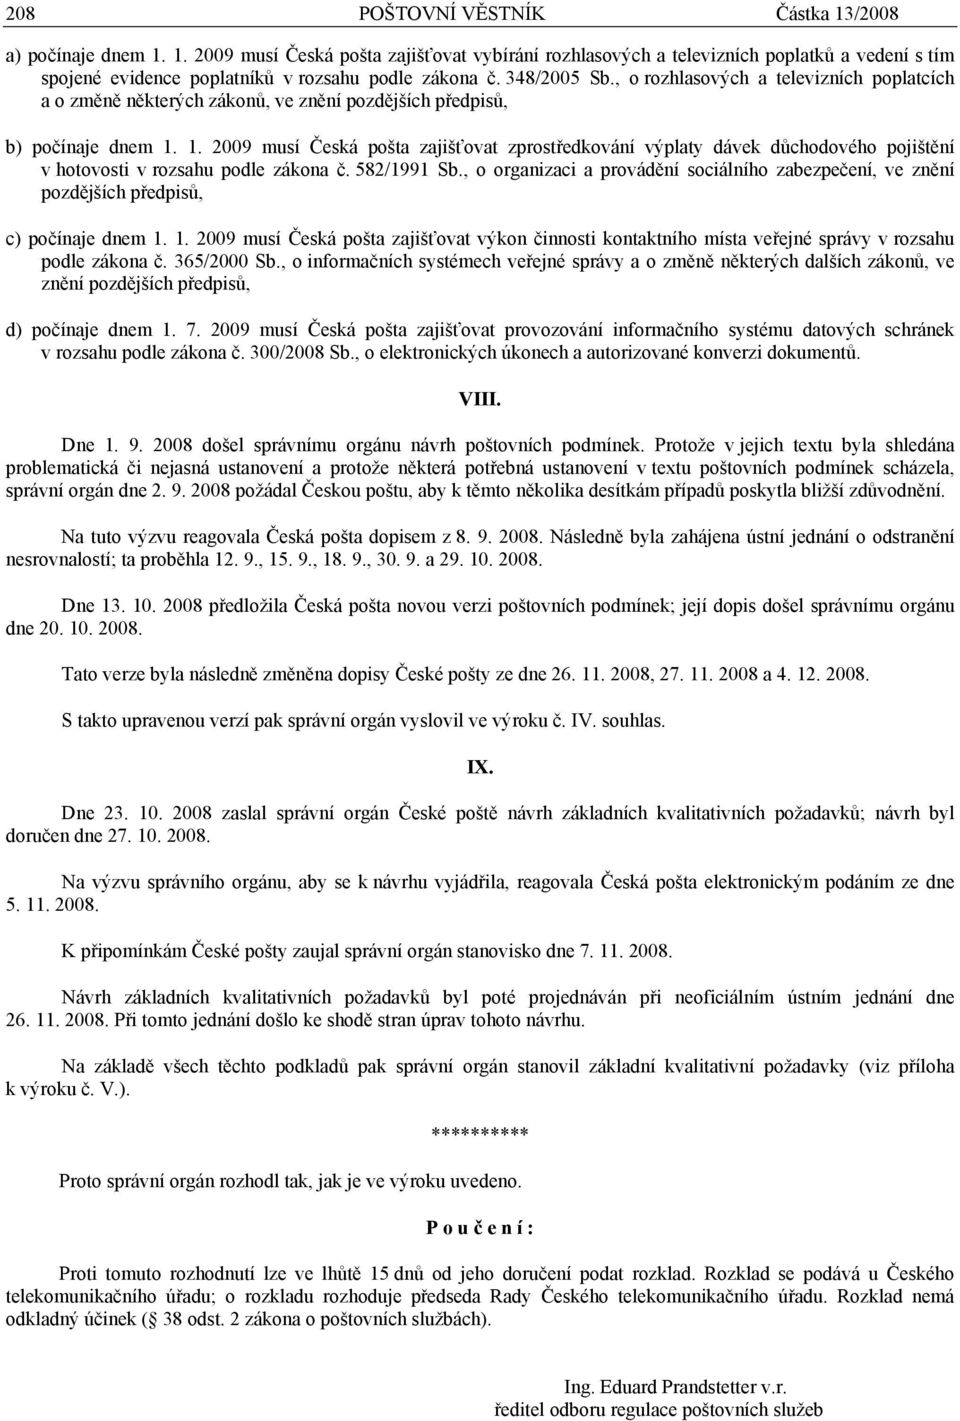 1. 2009 musí Česká pošta zajišťovat zprostředkování výplaty dávek důchodového pojištění v hotovosti v rozsahu podle zákona č. 582/1991 Sb.